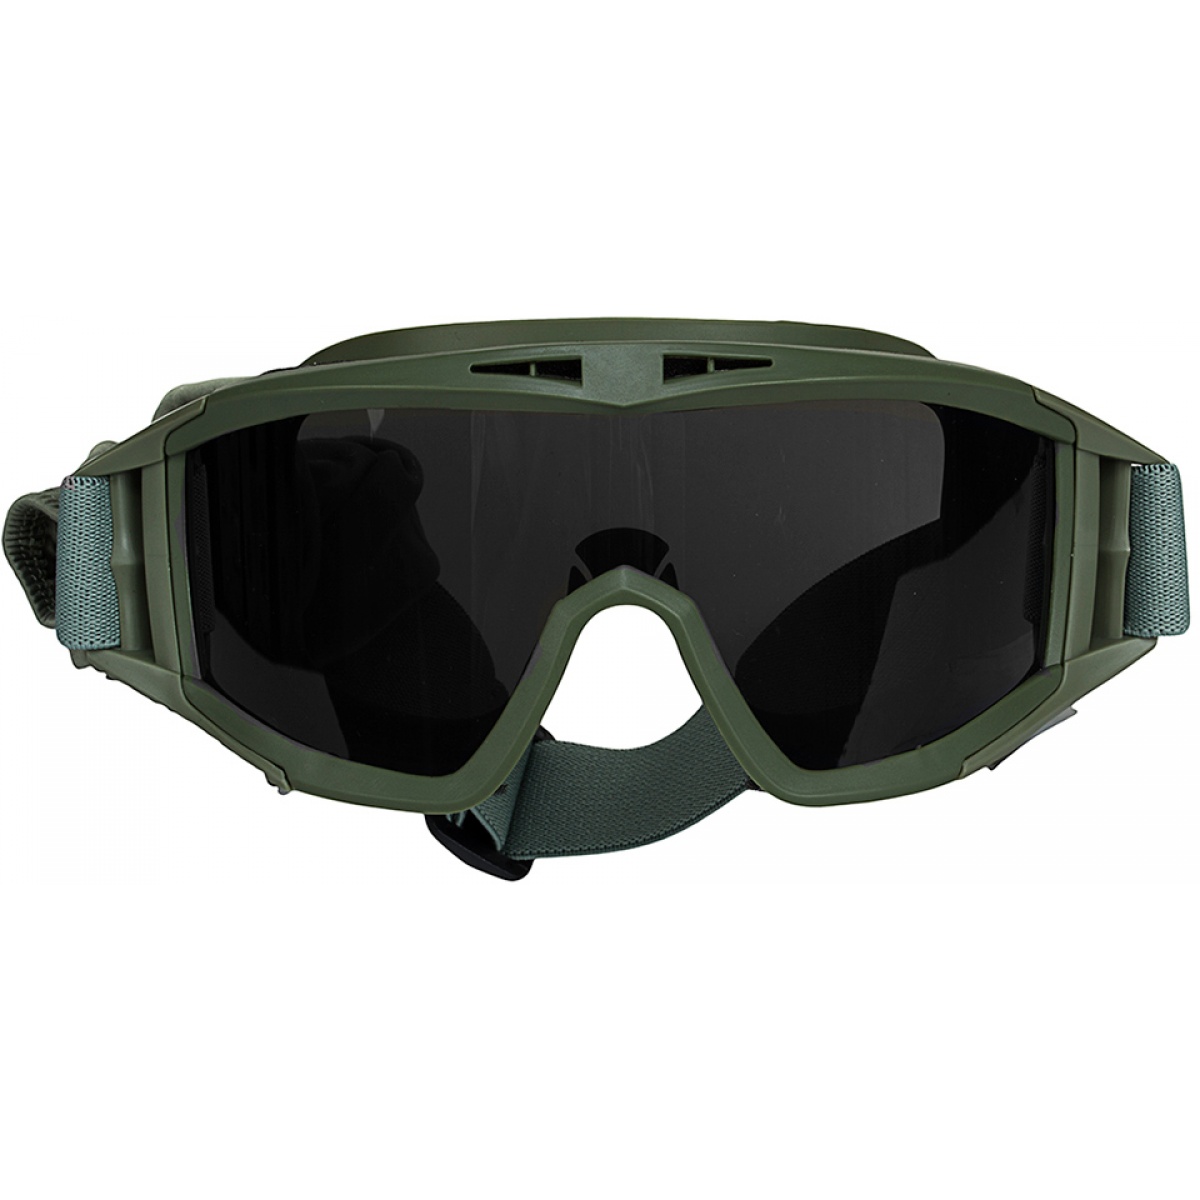 Valken Airsoft VTAC Tango Tactical Goggles - OLIVE DRAB | Airsoft Megastore